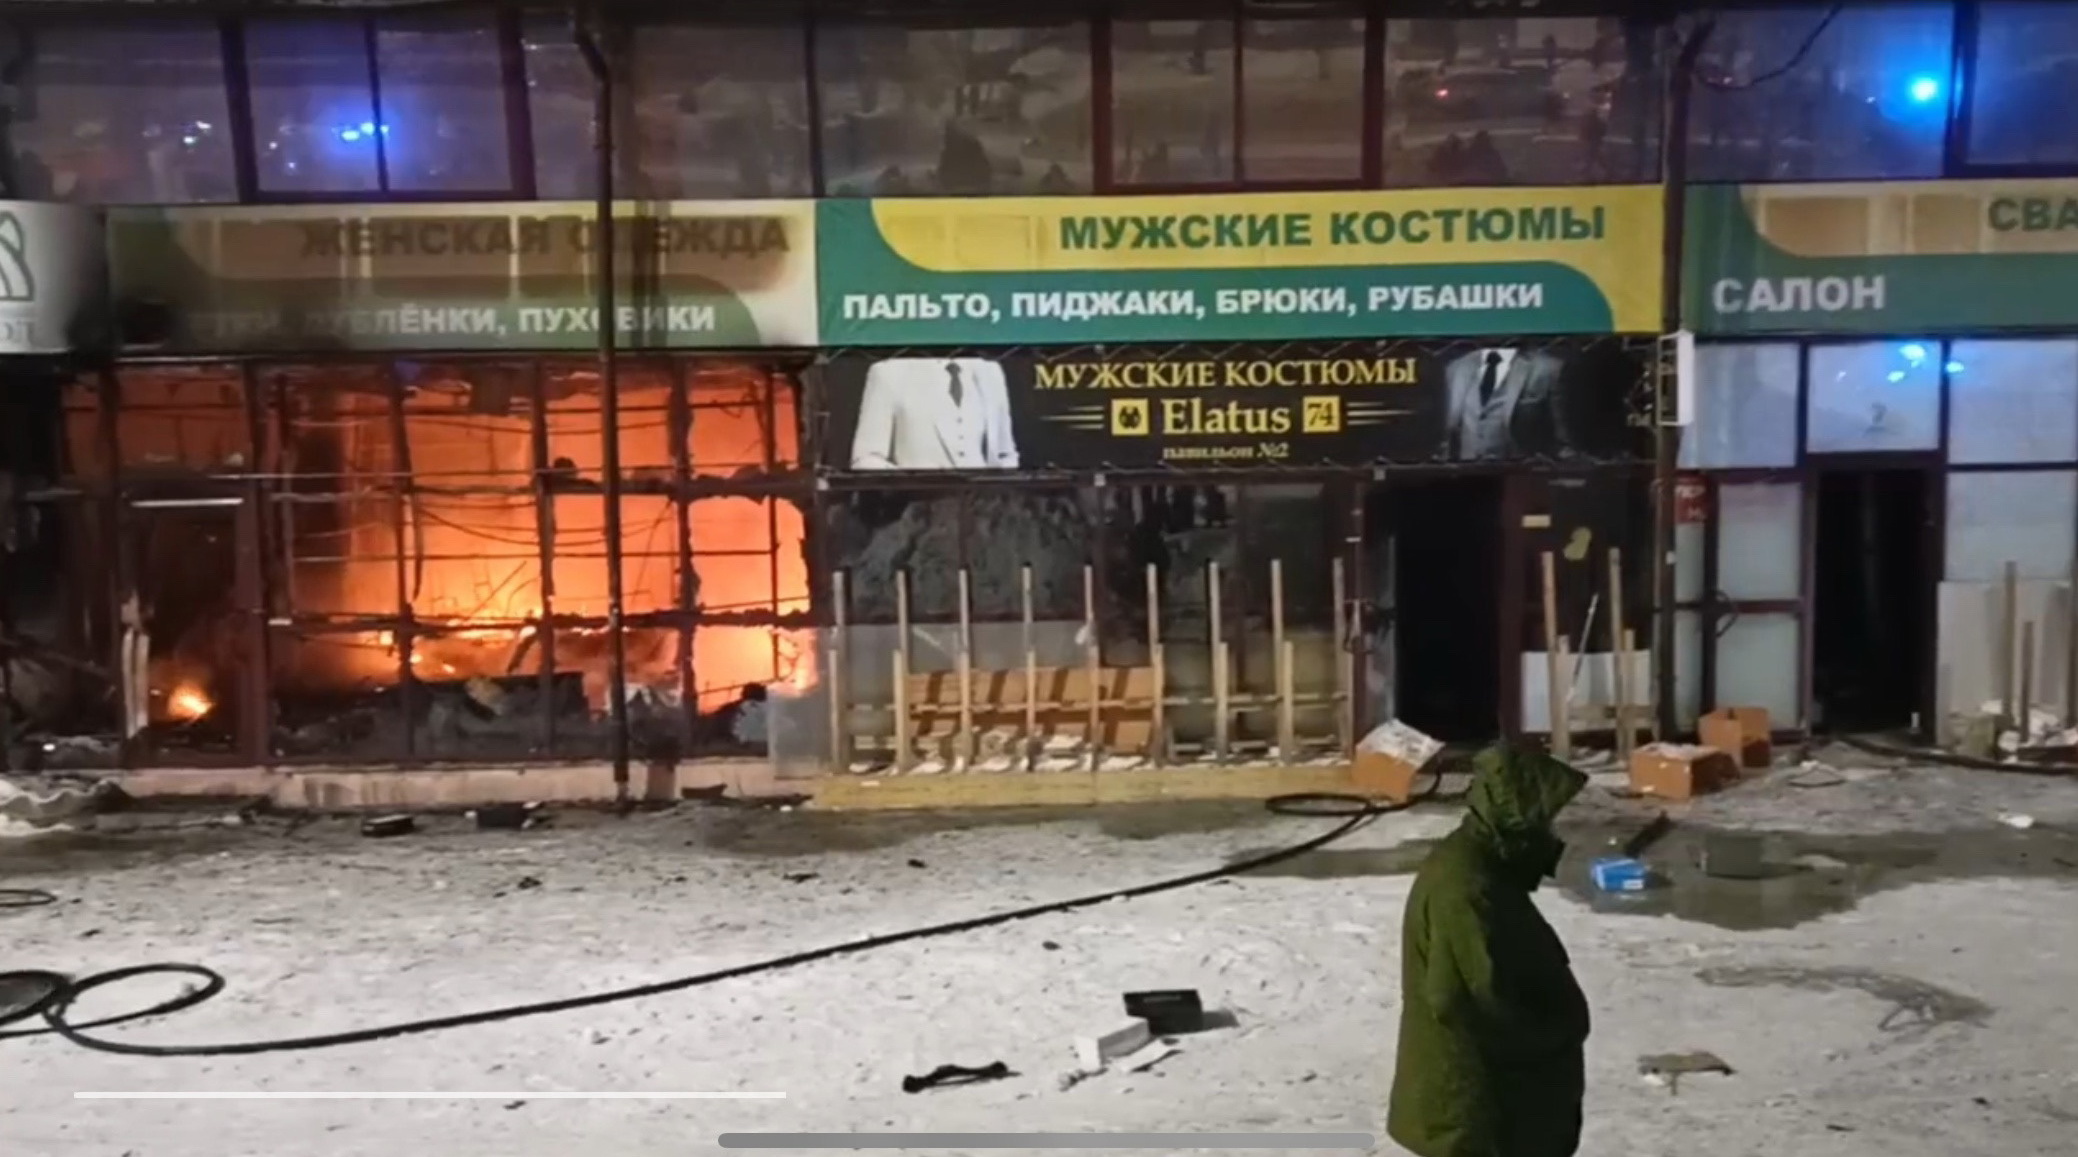 "Восточный город" сгорел: как тушили рынок в центре Челябинска 